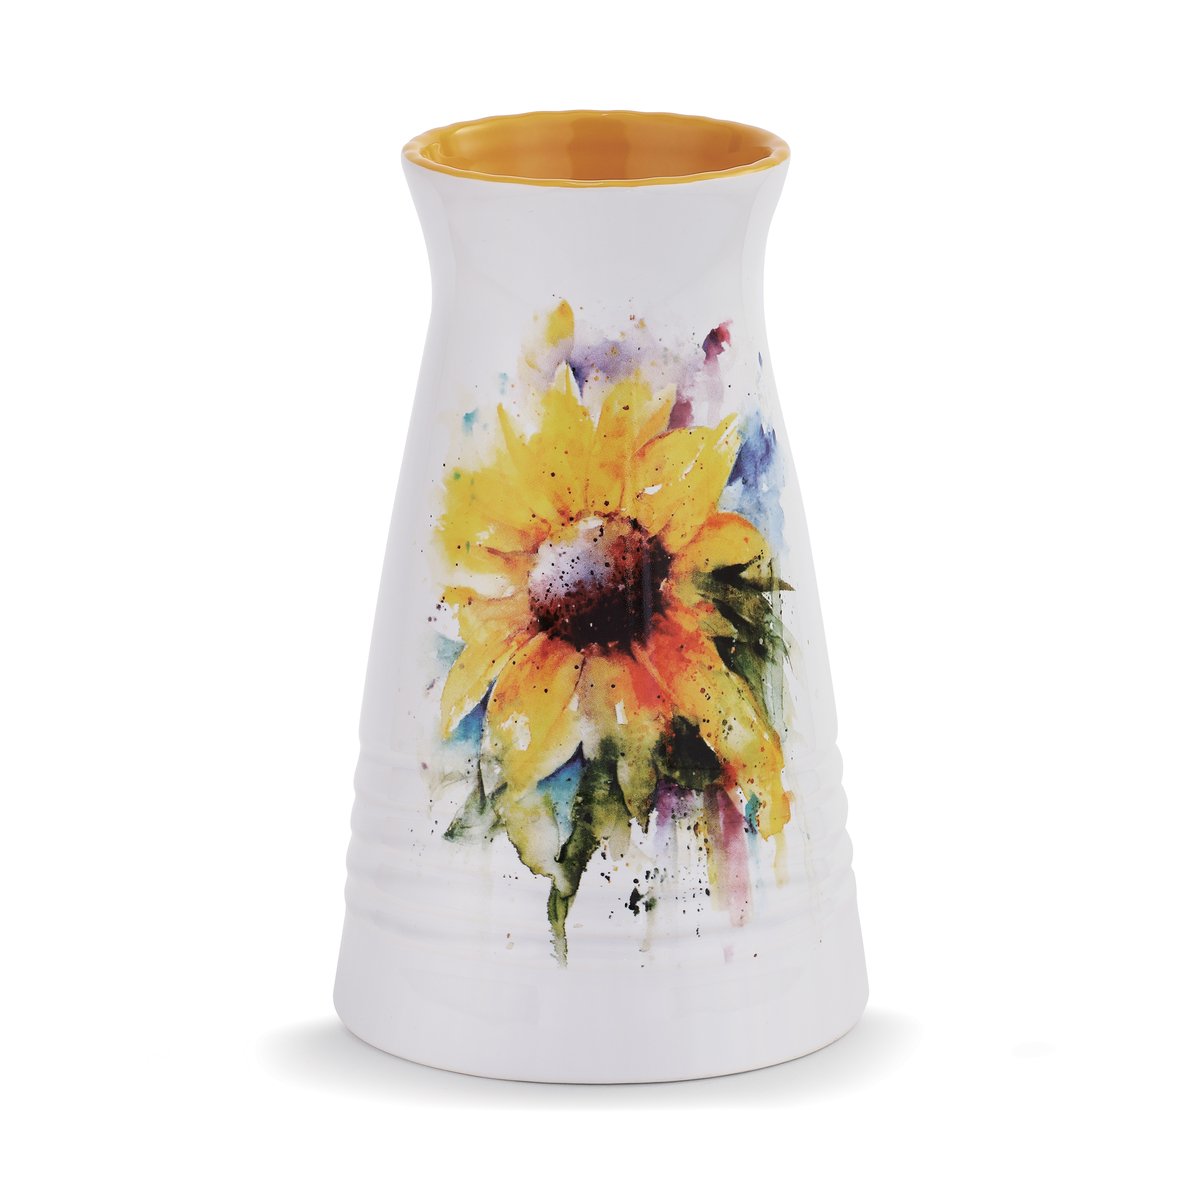 Dean Crouser Sunflower Vase